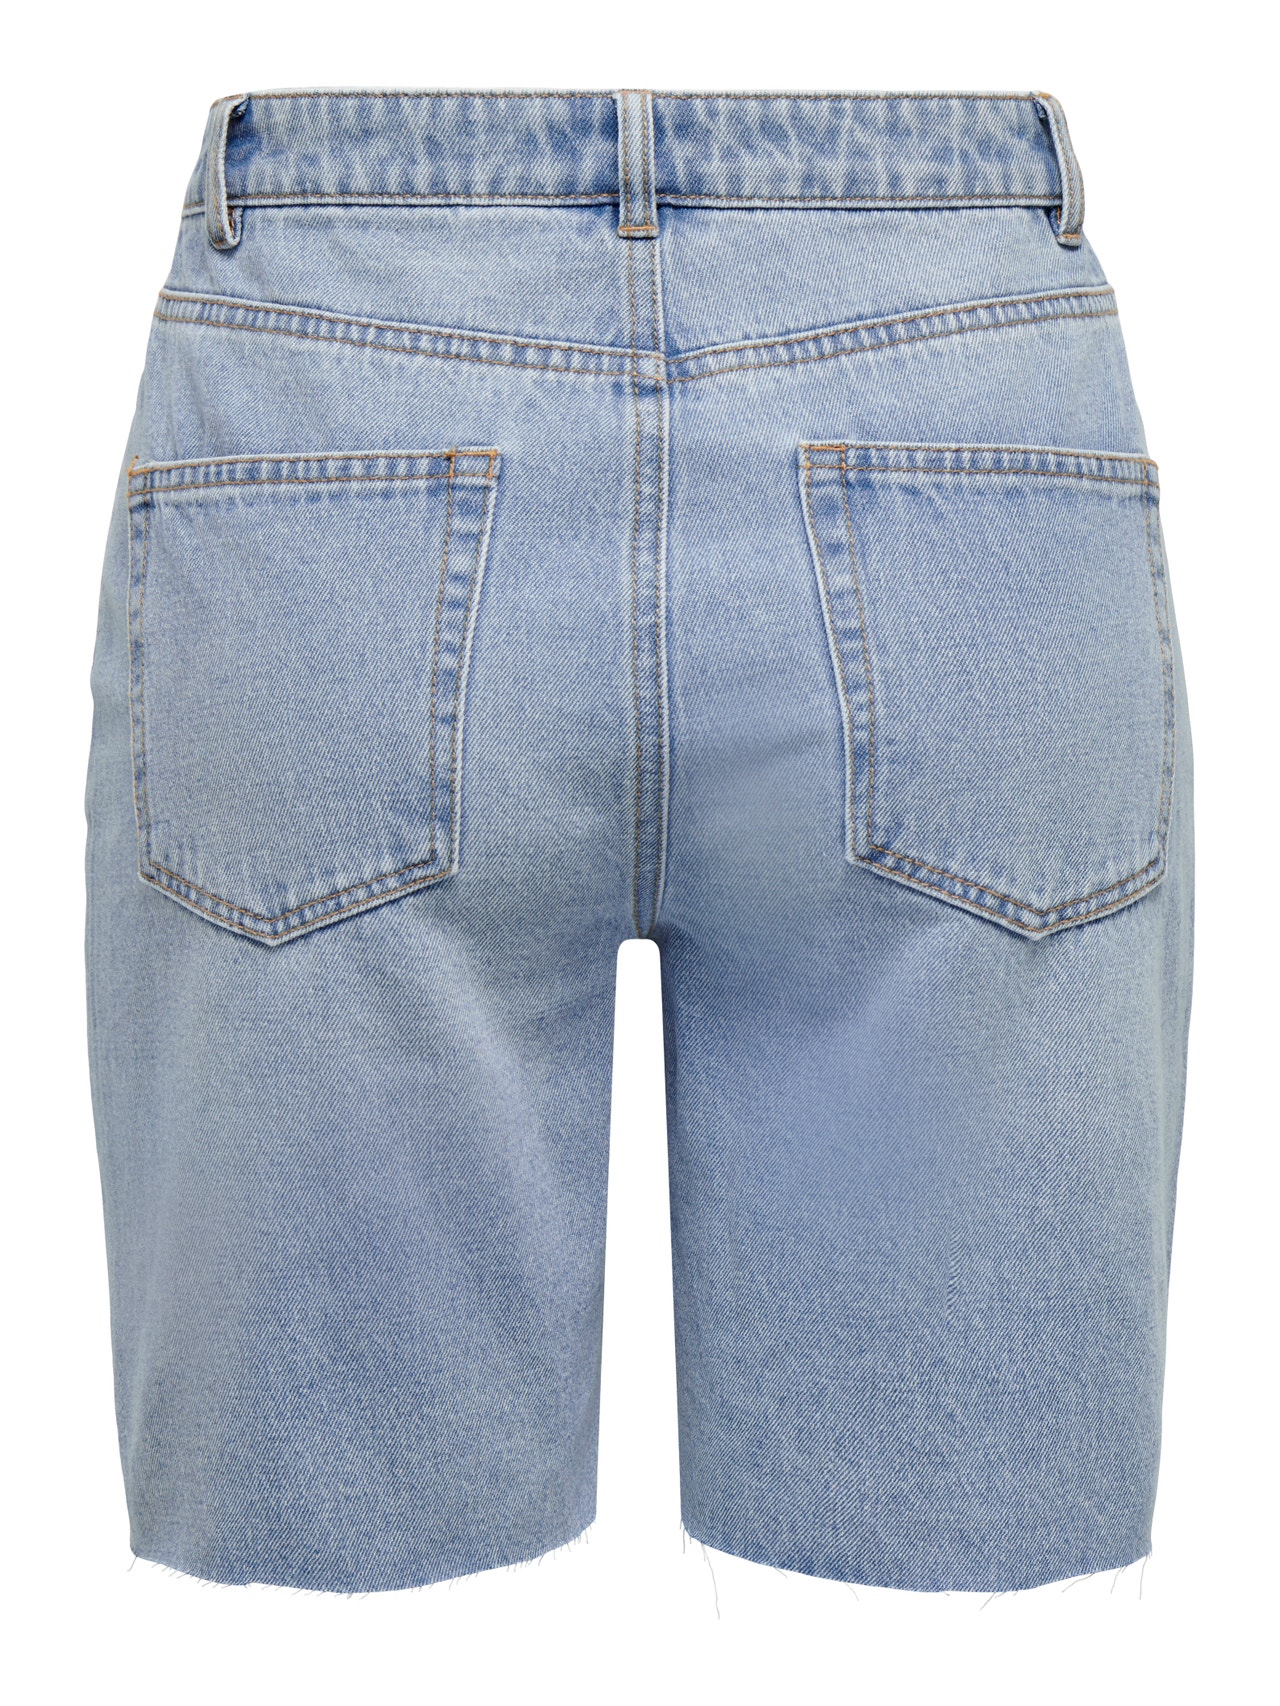 ONLY Loose fit denim shorts -Light Blue Denim - 15295540